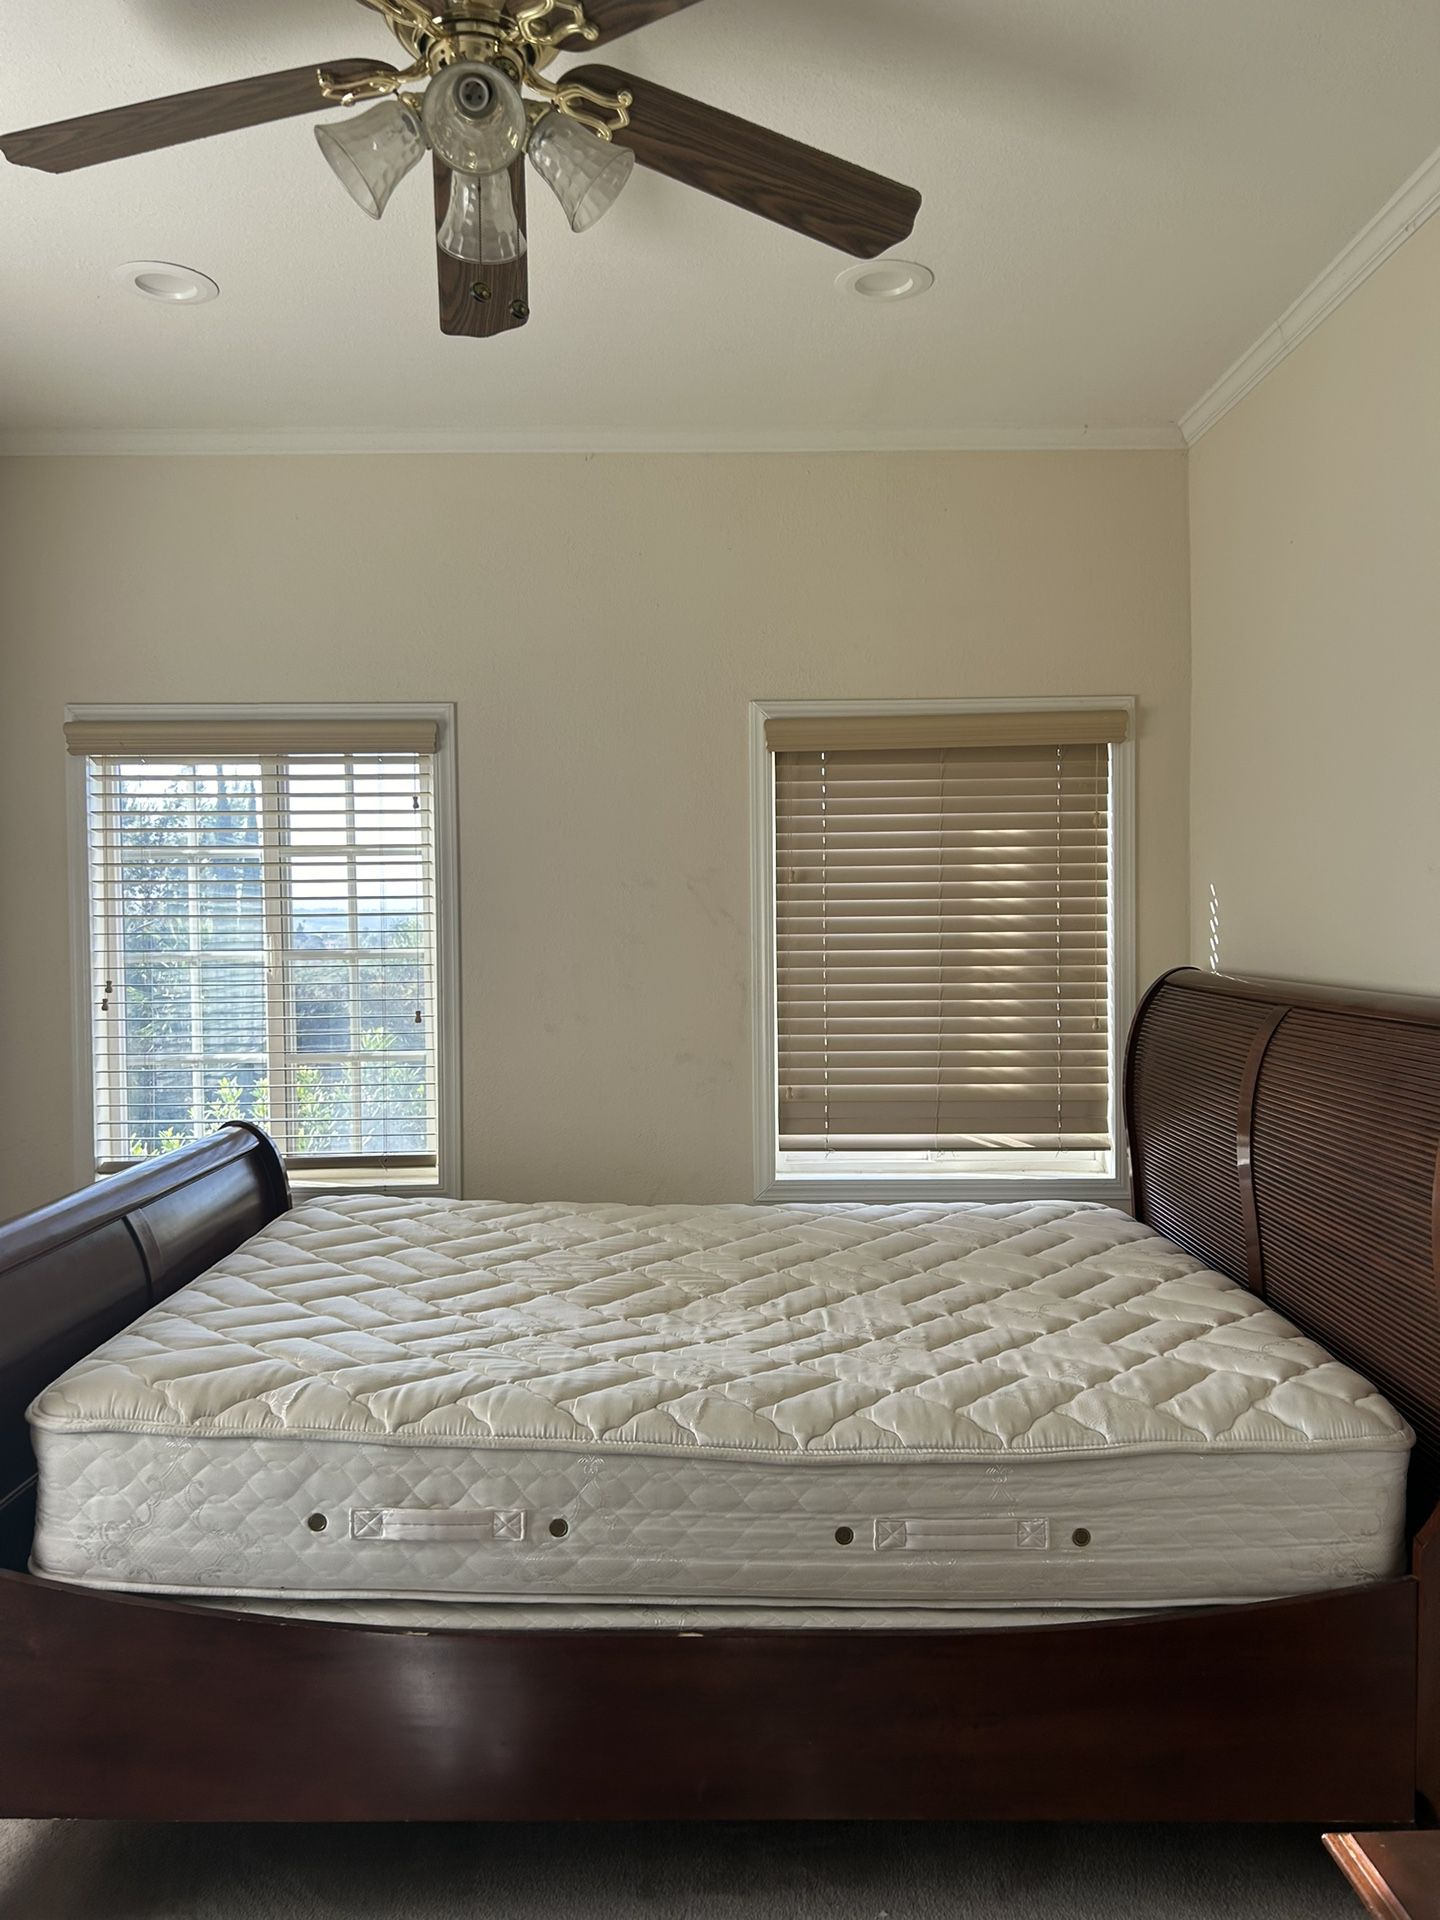 Bed - frame & mattress